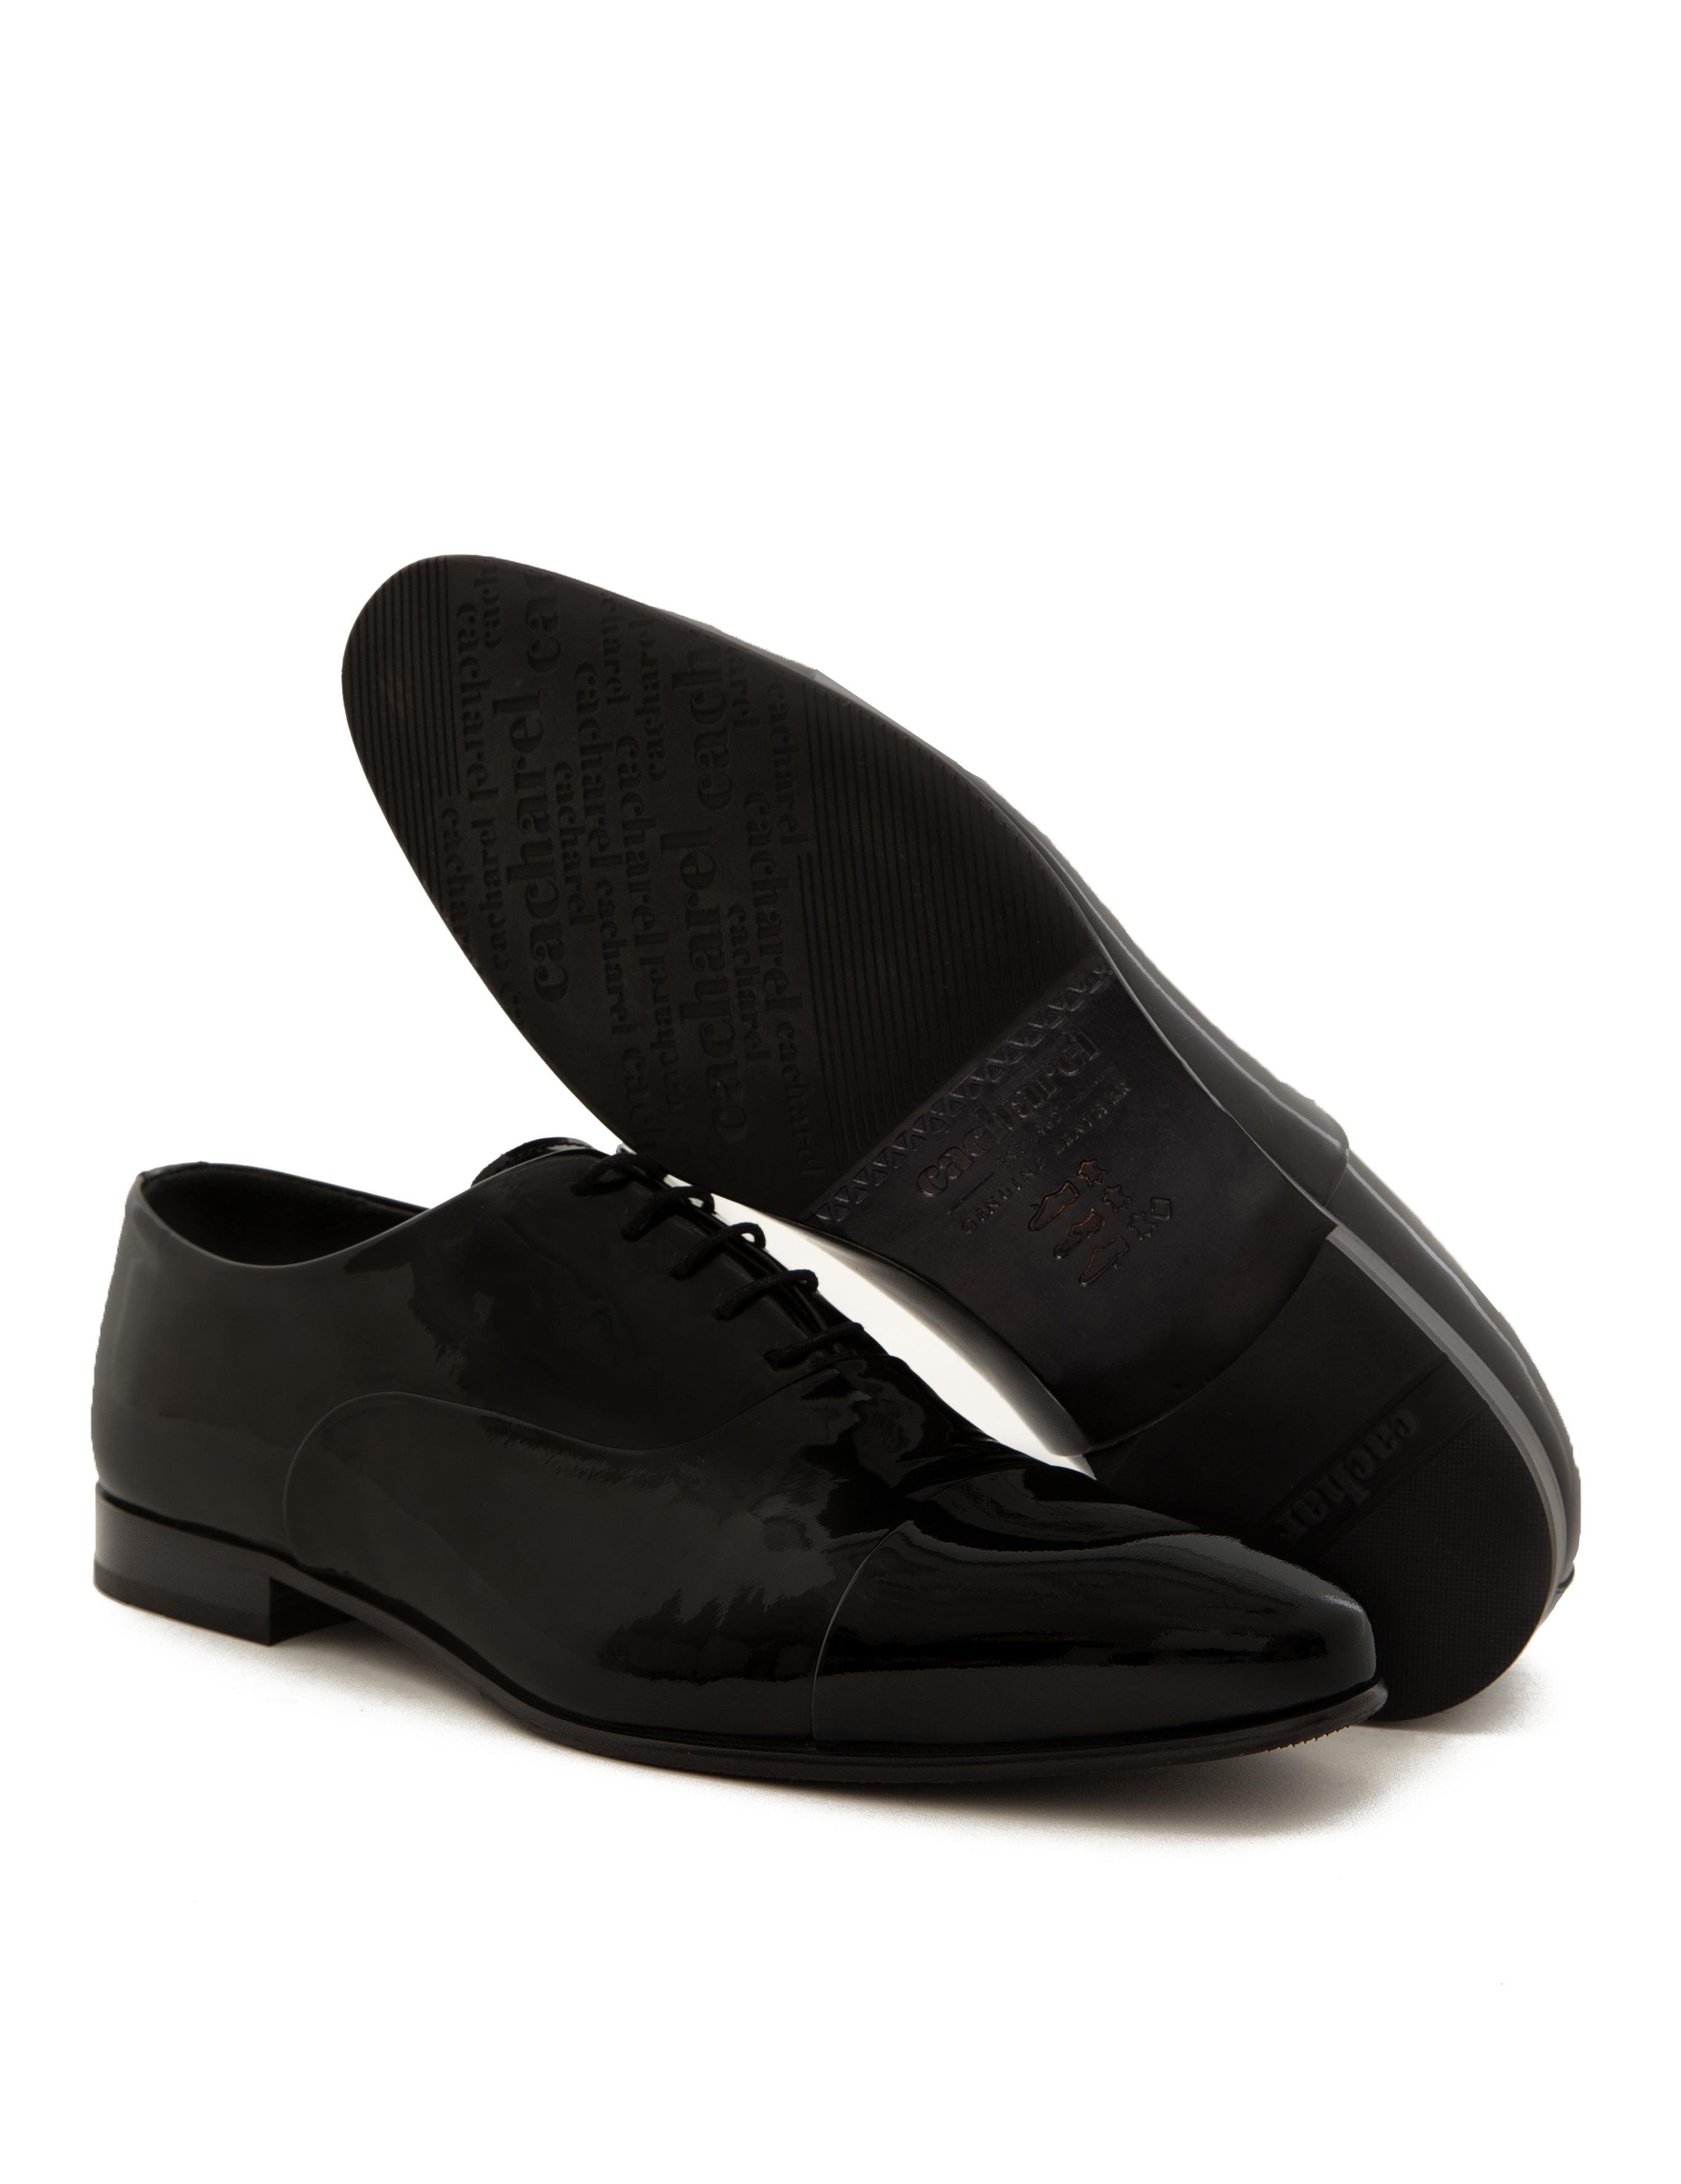 Siyah Klasik Ayakkabı - 50216950002